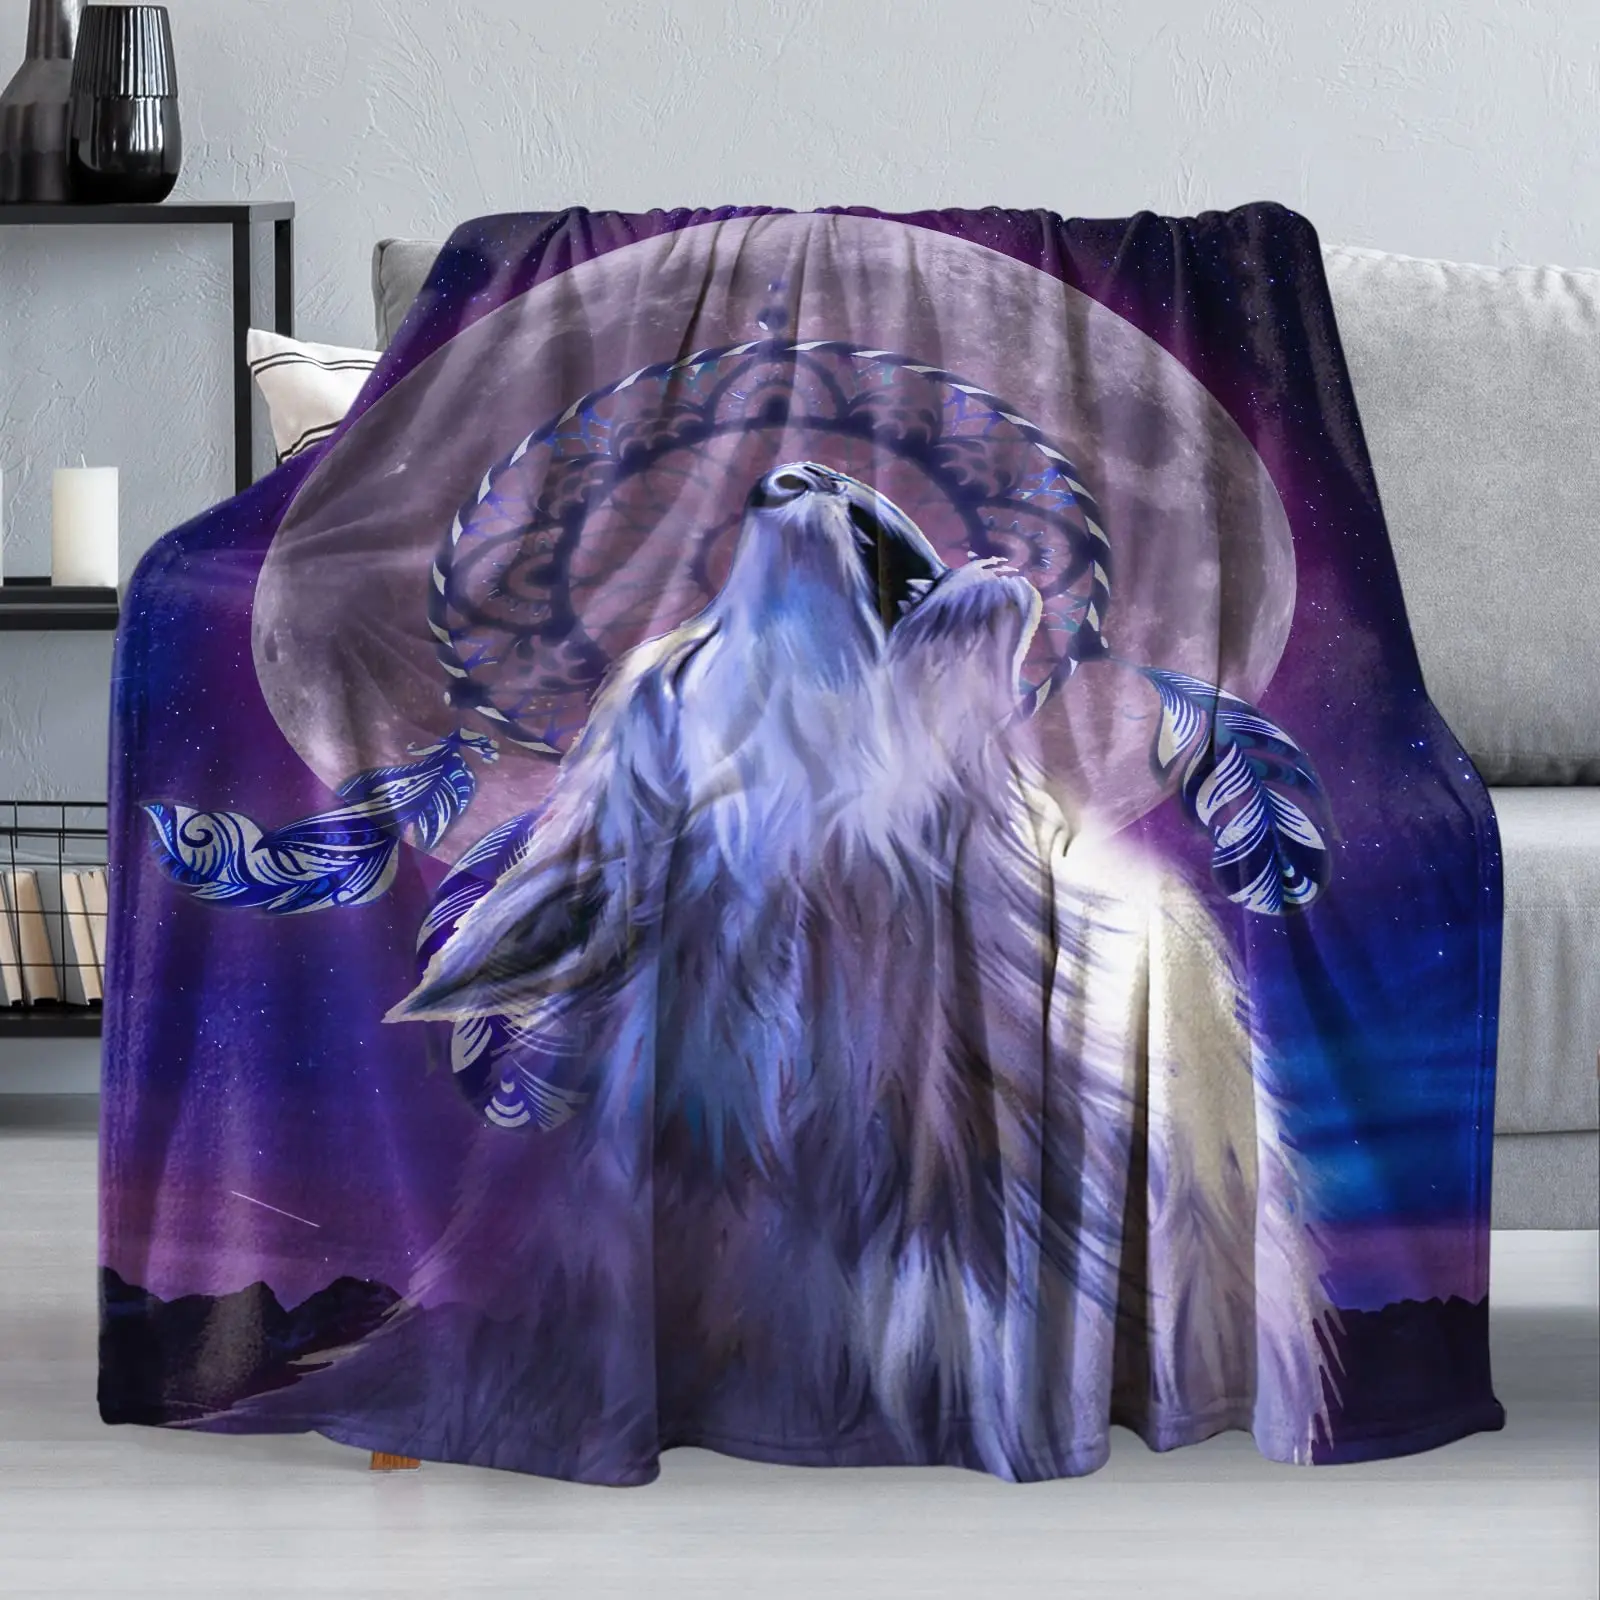 

Флисовое одеяло Синего Волка, зимнее удобное одеяло с волками в виде животных, легкое мягкое плотное теплое одеяло для кровати, кушетки, дву...